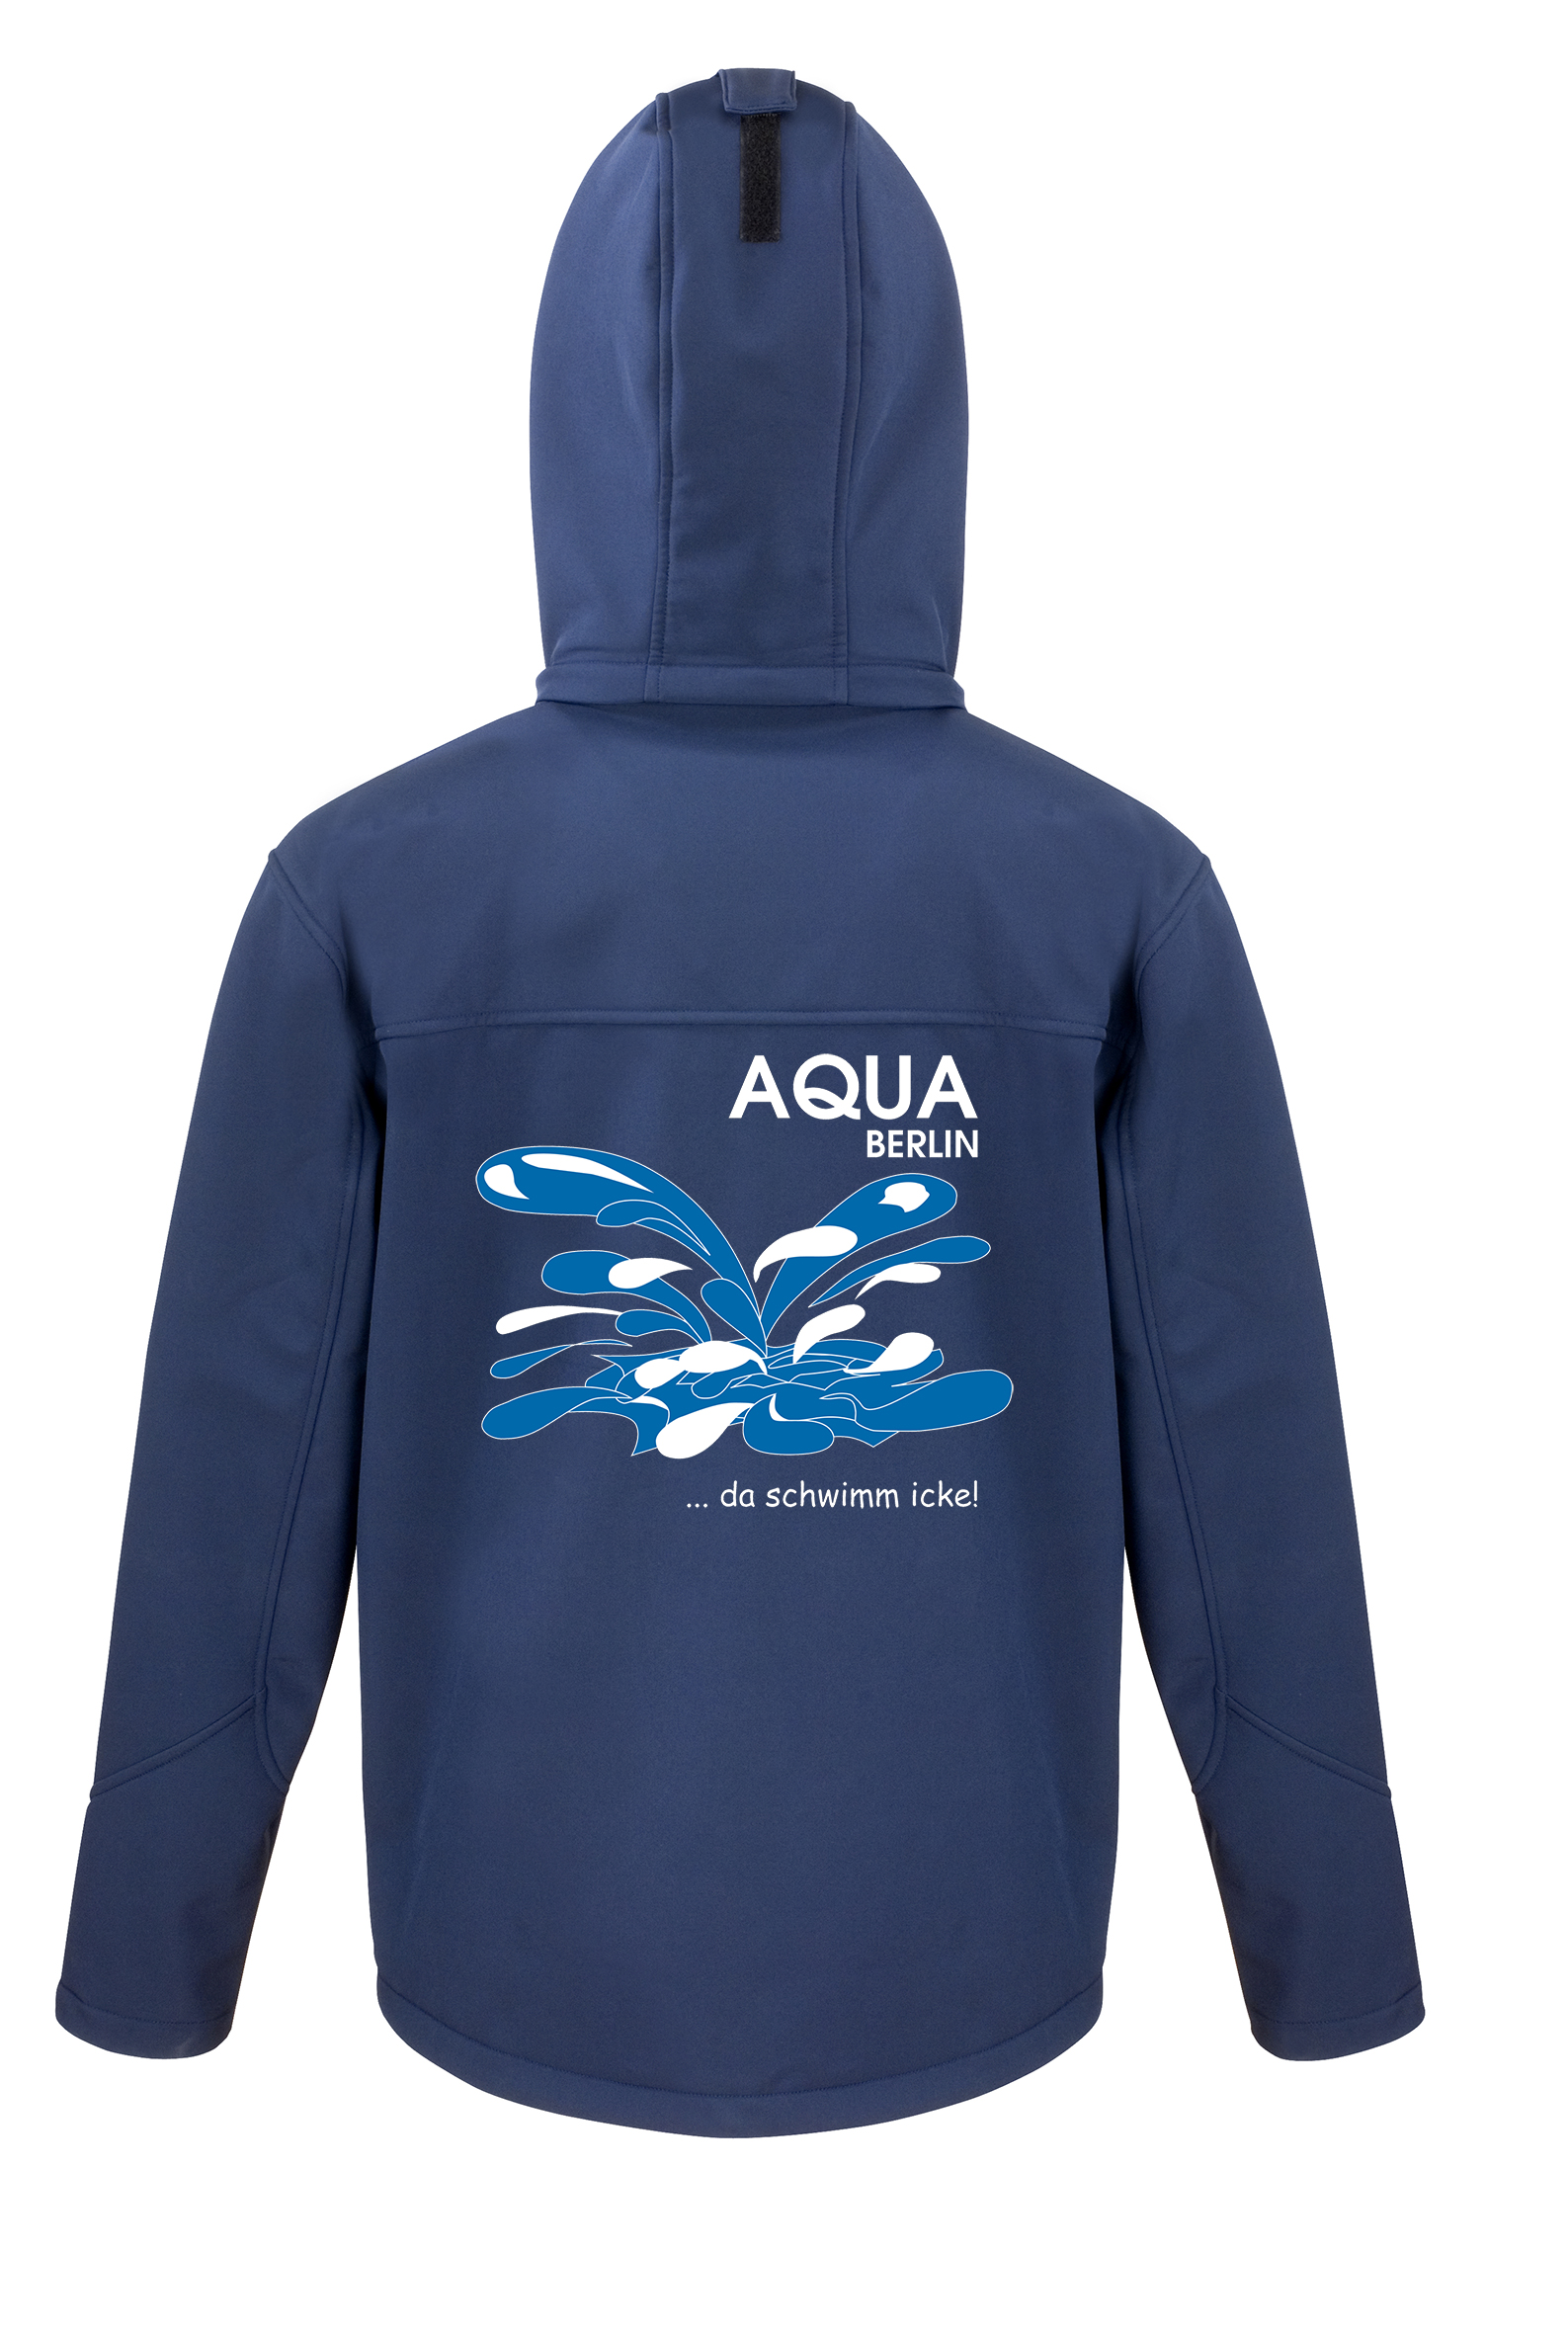 Aqua Softshell-Jacke Herren - mit Platsch auf dem Rücken 